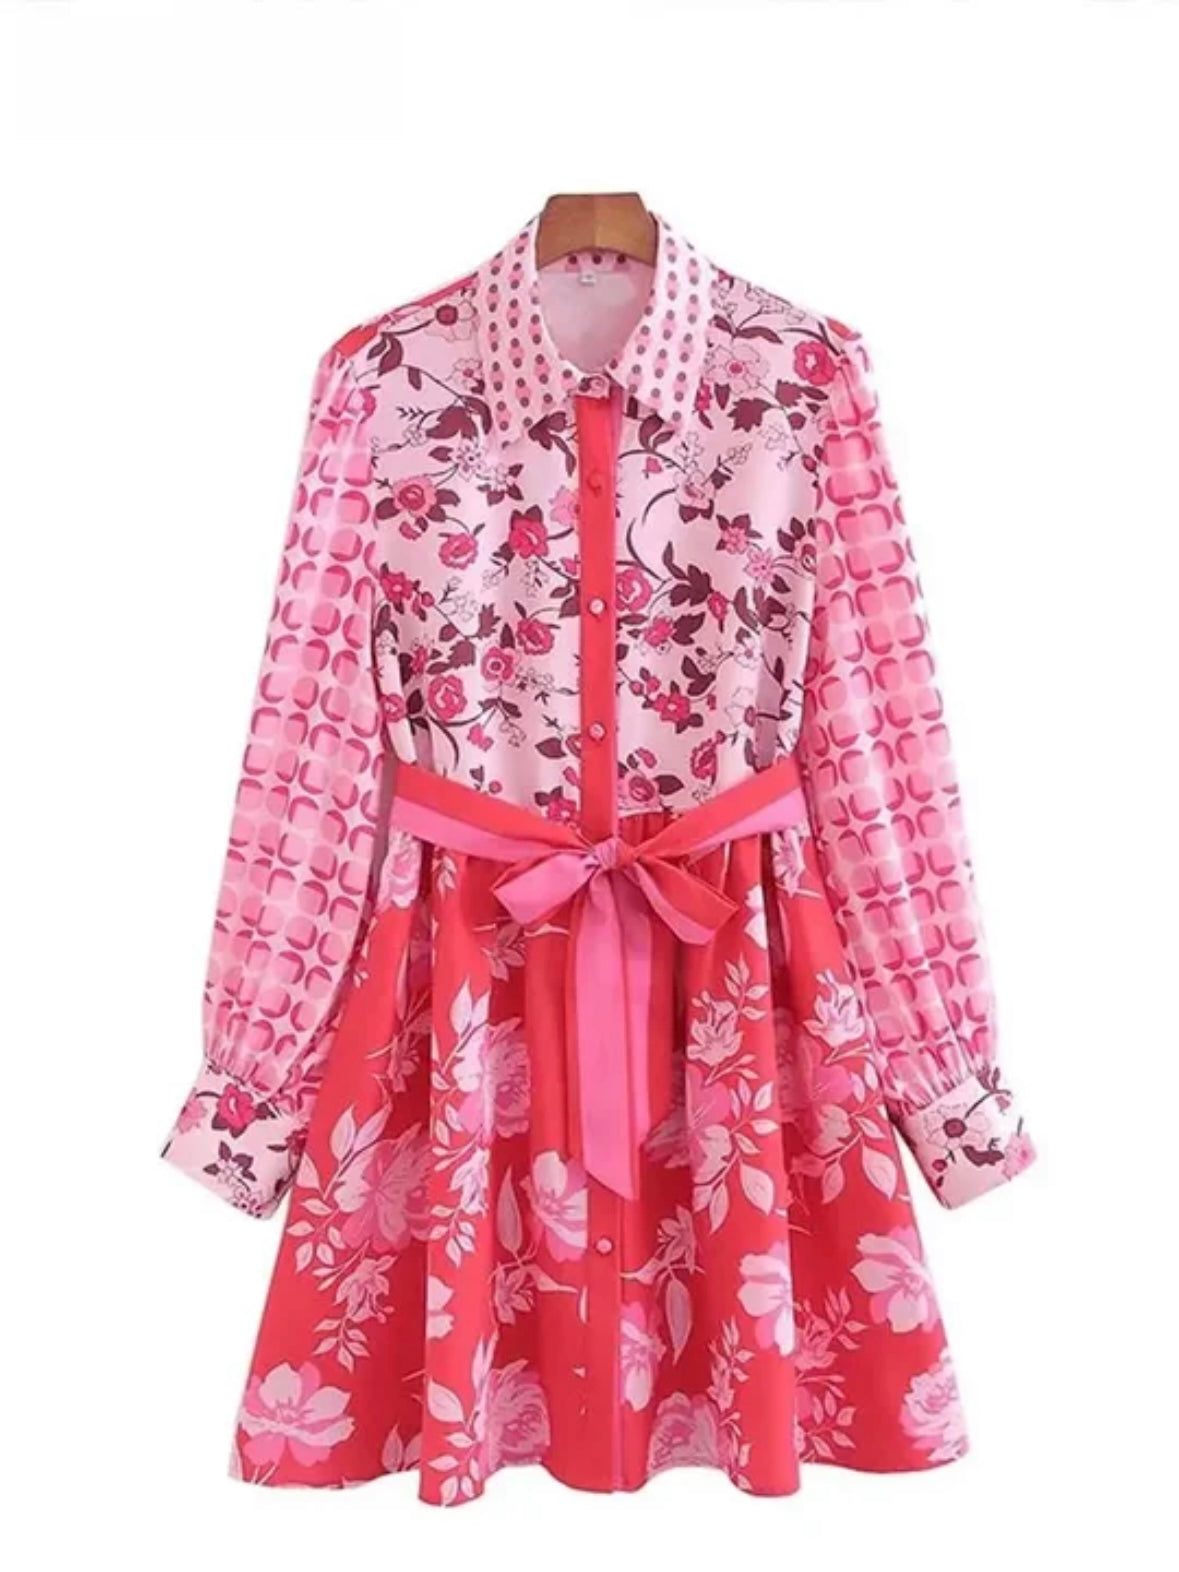 Pink floral short dress